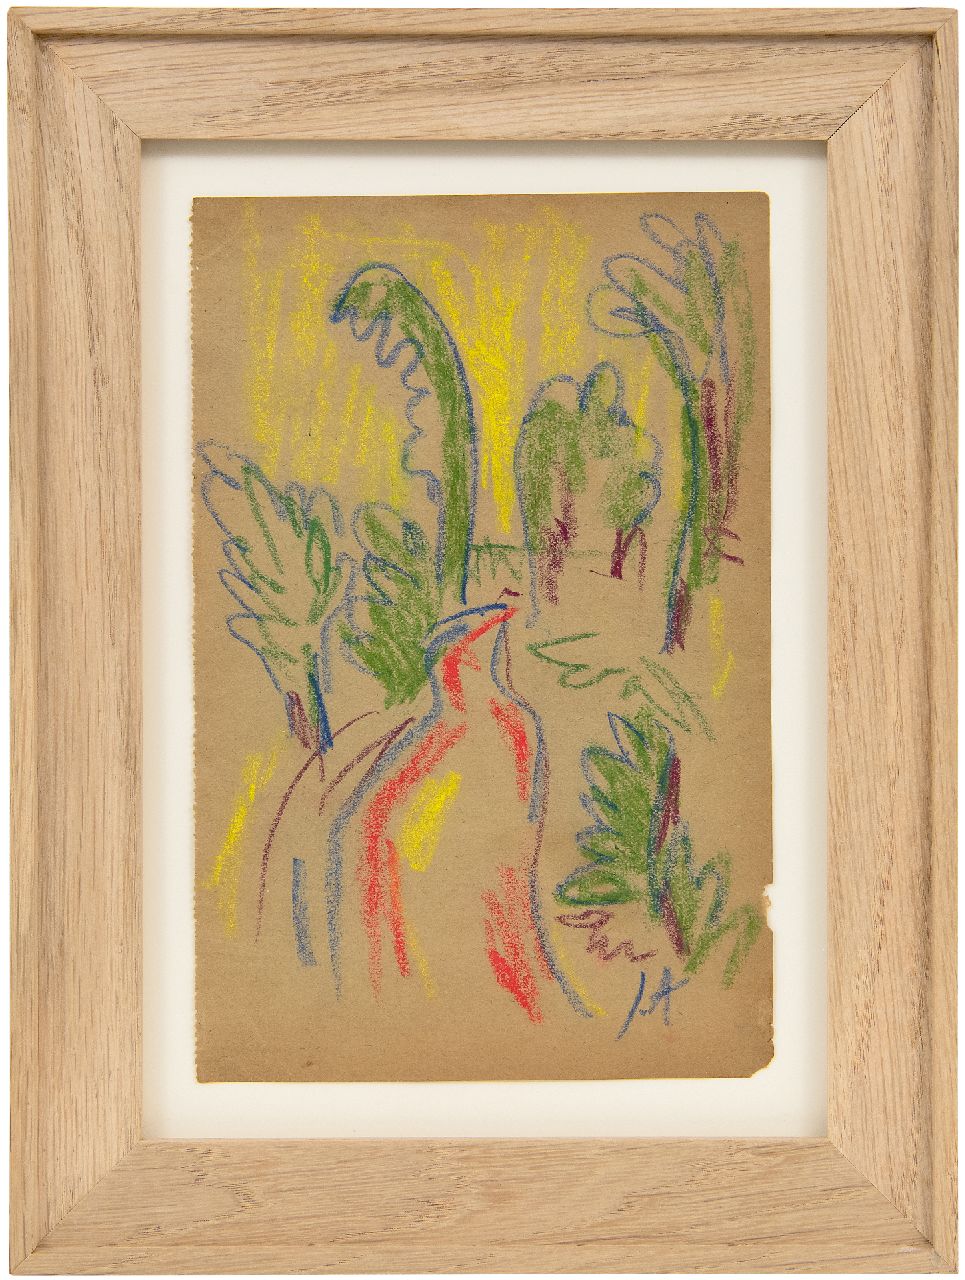 Altink J.  | Jan Altink | Aquarellen en tekeningen te koop aangeboden | Landschap met rode weg, krijt op papier 17,4 x 11,3 cm, gesigneerd rechtsonder met initialen